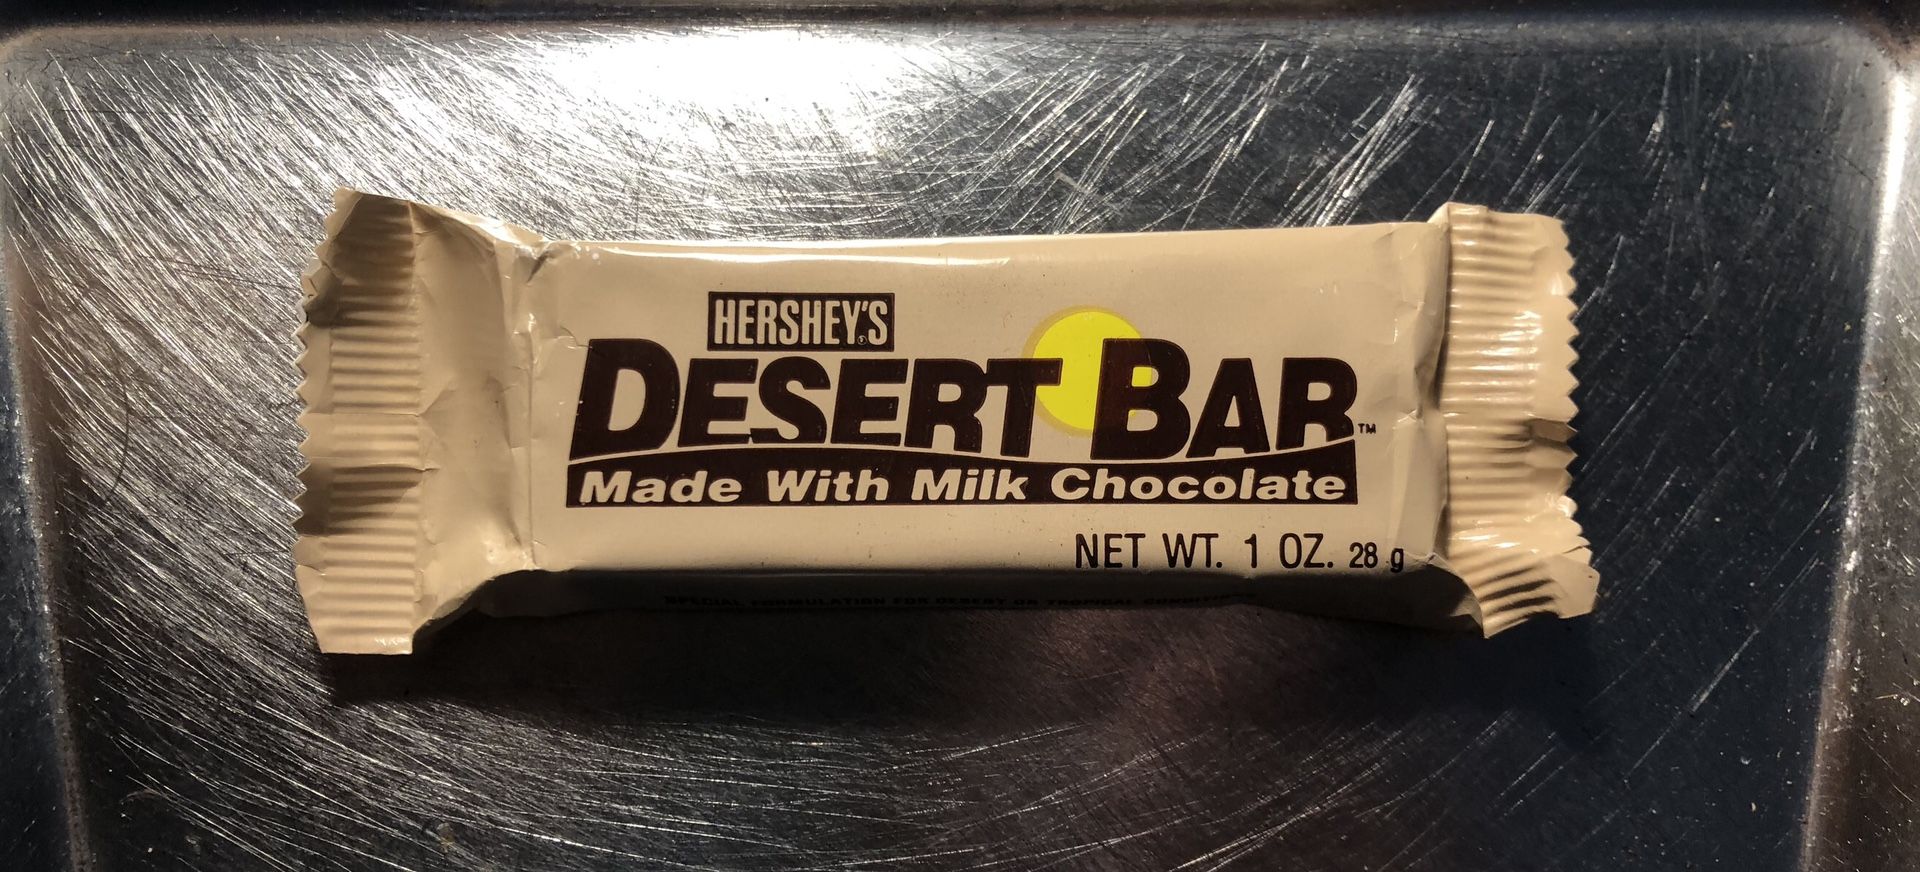 Hershey’s Desert Bar From Desert Shield/Storm Conflict